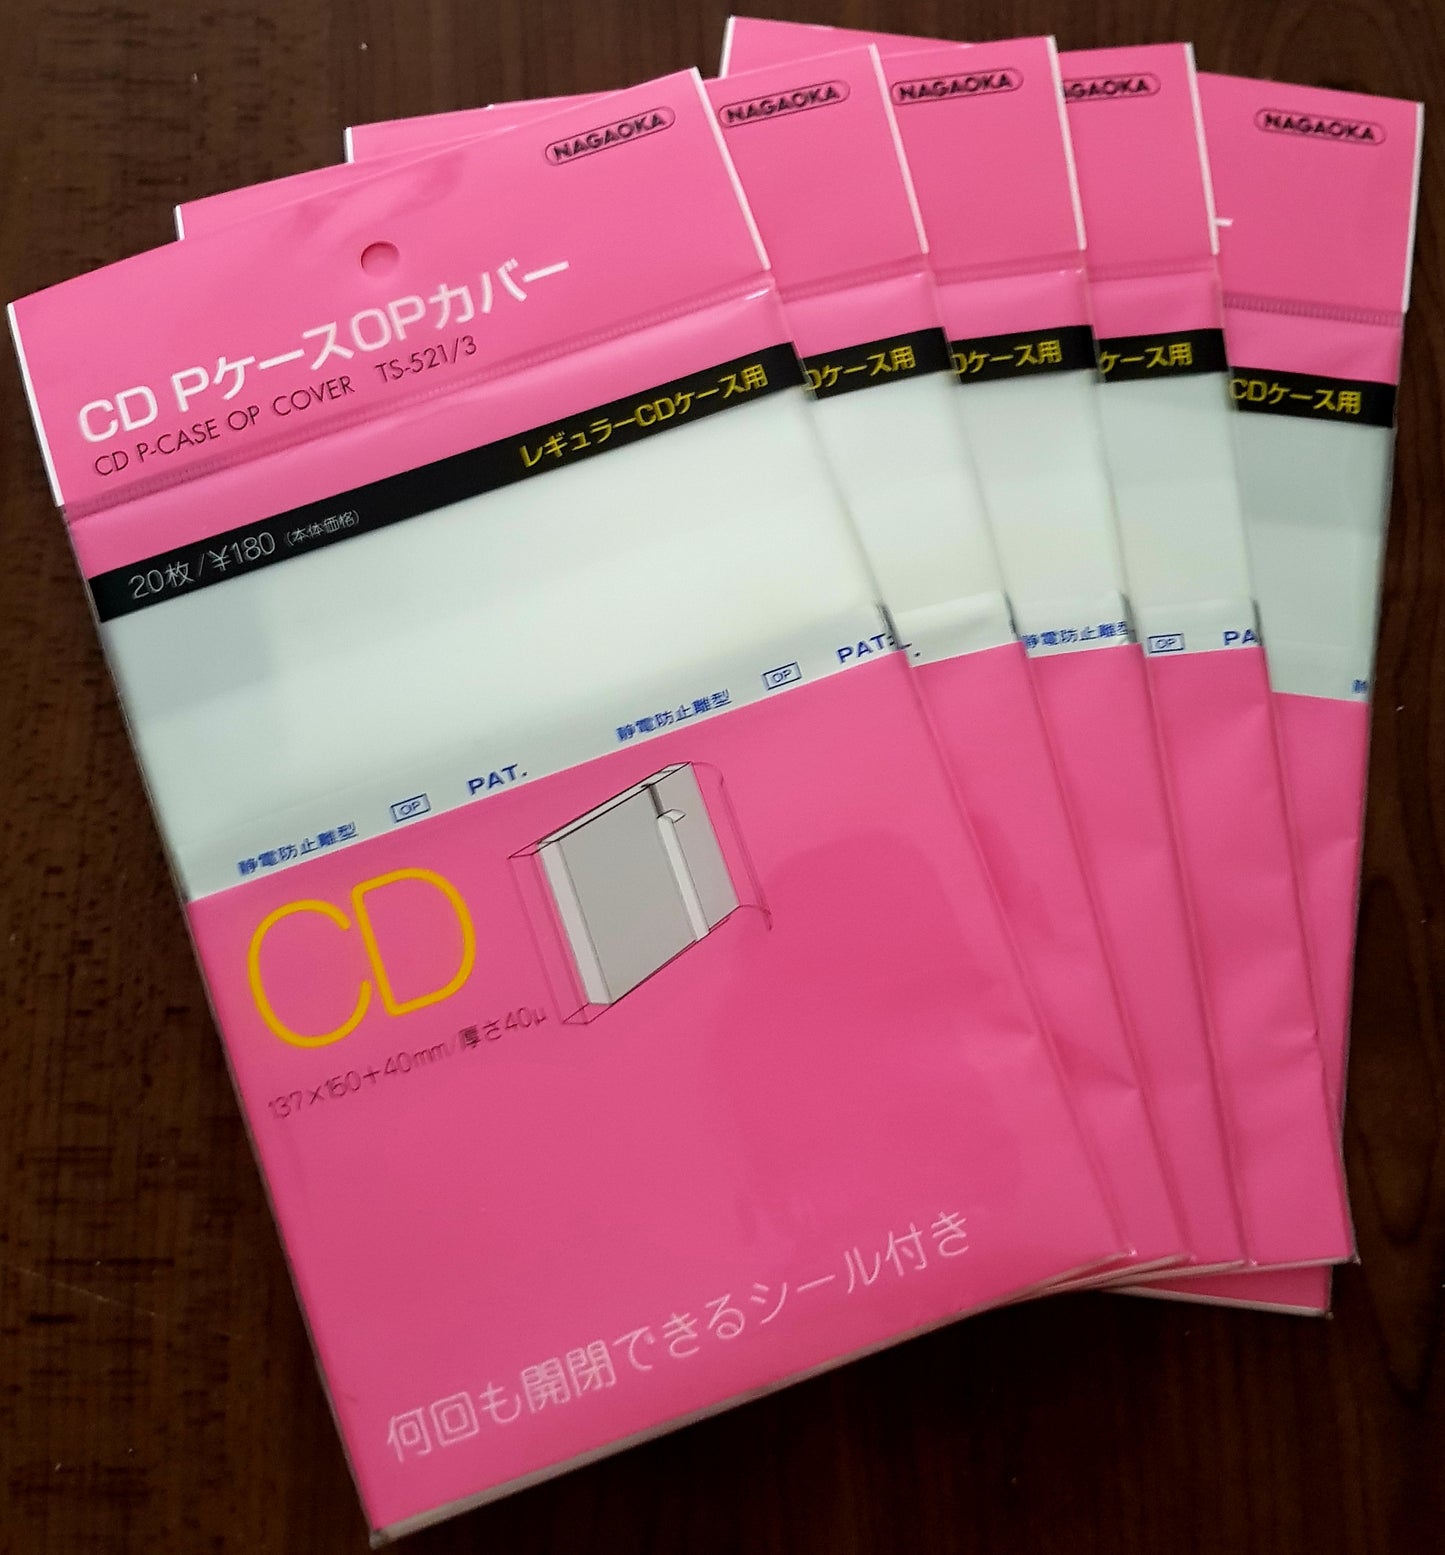 20 Pochettes CD Nagaoka TS-521/3 Horizontal Jewel